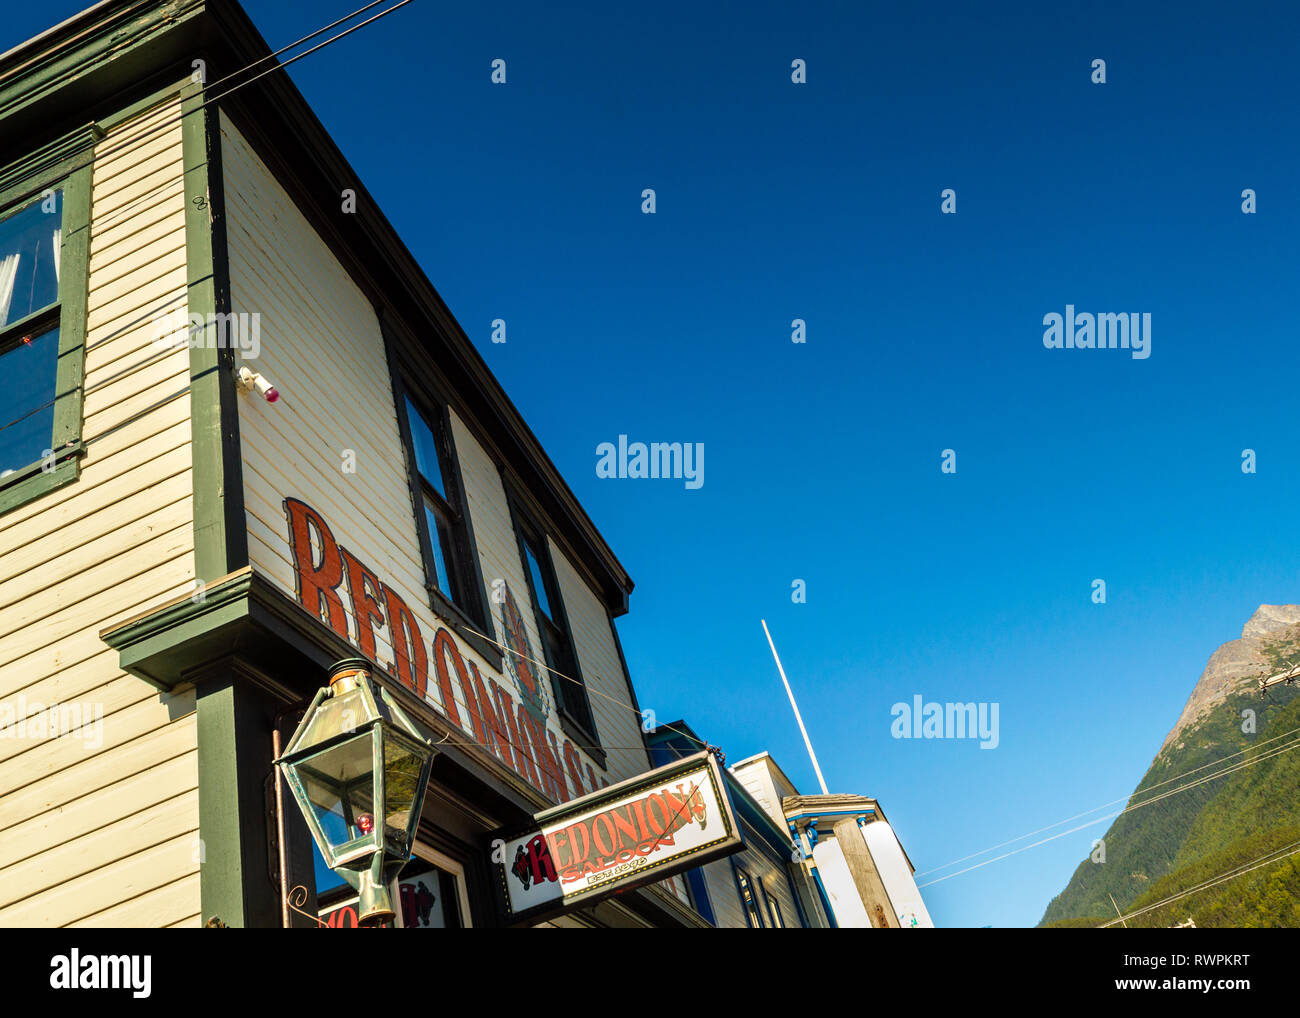 Septiembre 15, 2018 - Skagway, AK: Parte delantera de la berlina de cebolla roja, construido en 1897, este histórico burdel funciona hoy como un restaurante, un bar y un museo. Foto de stock